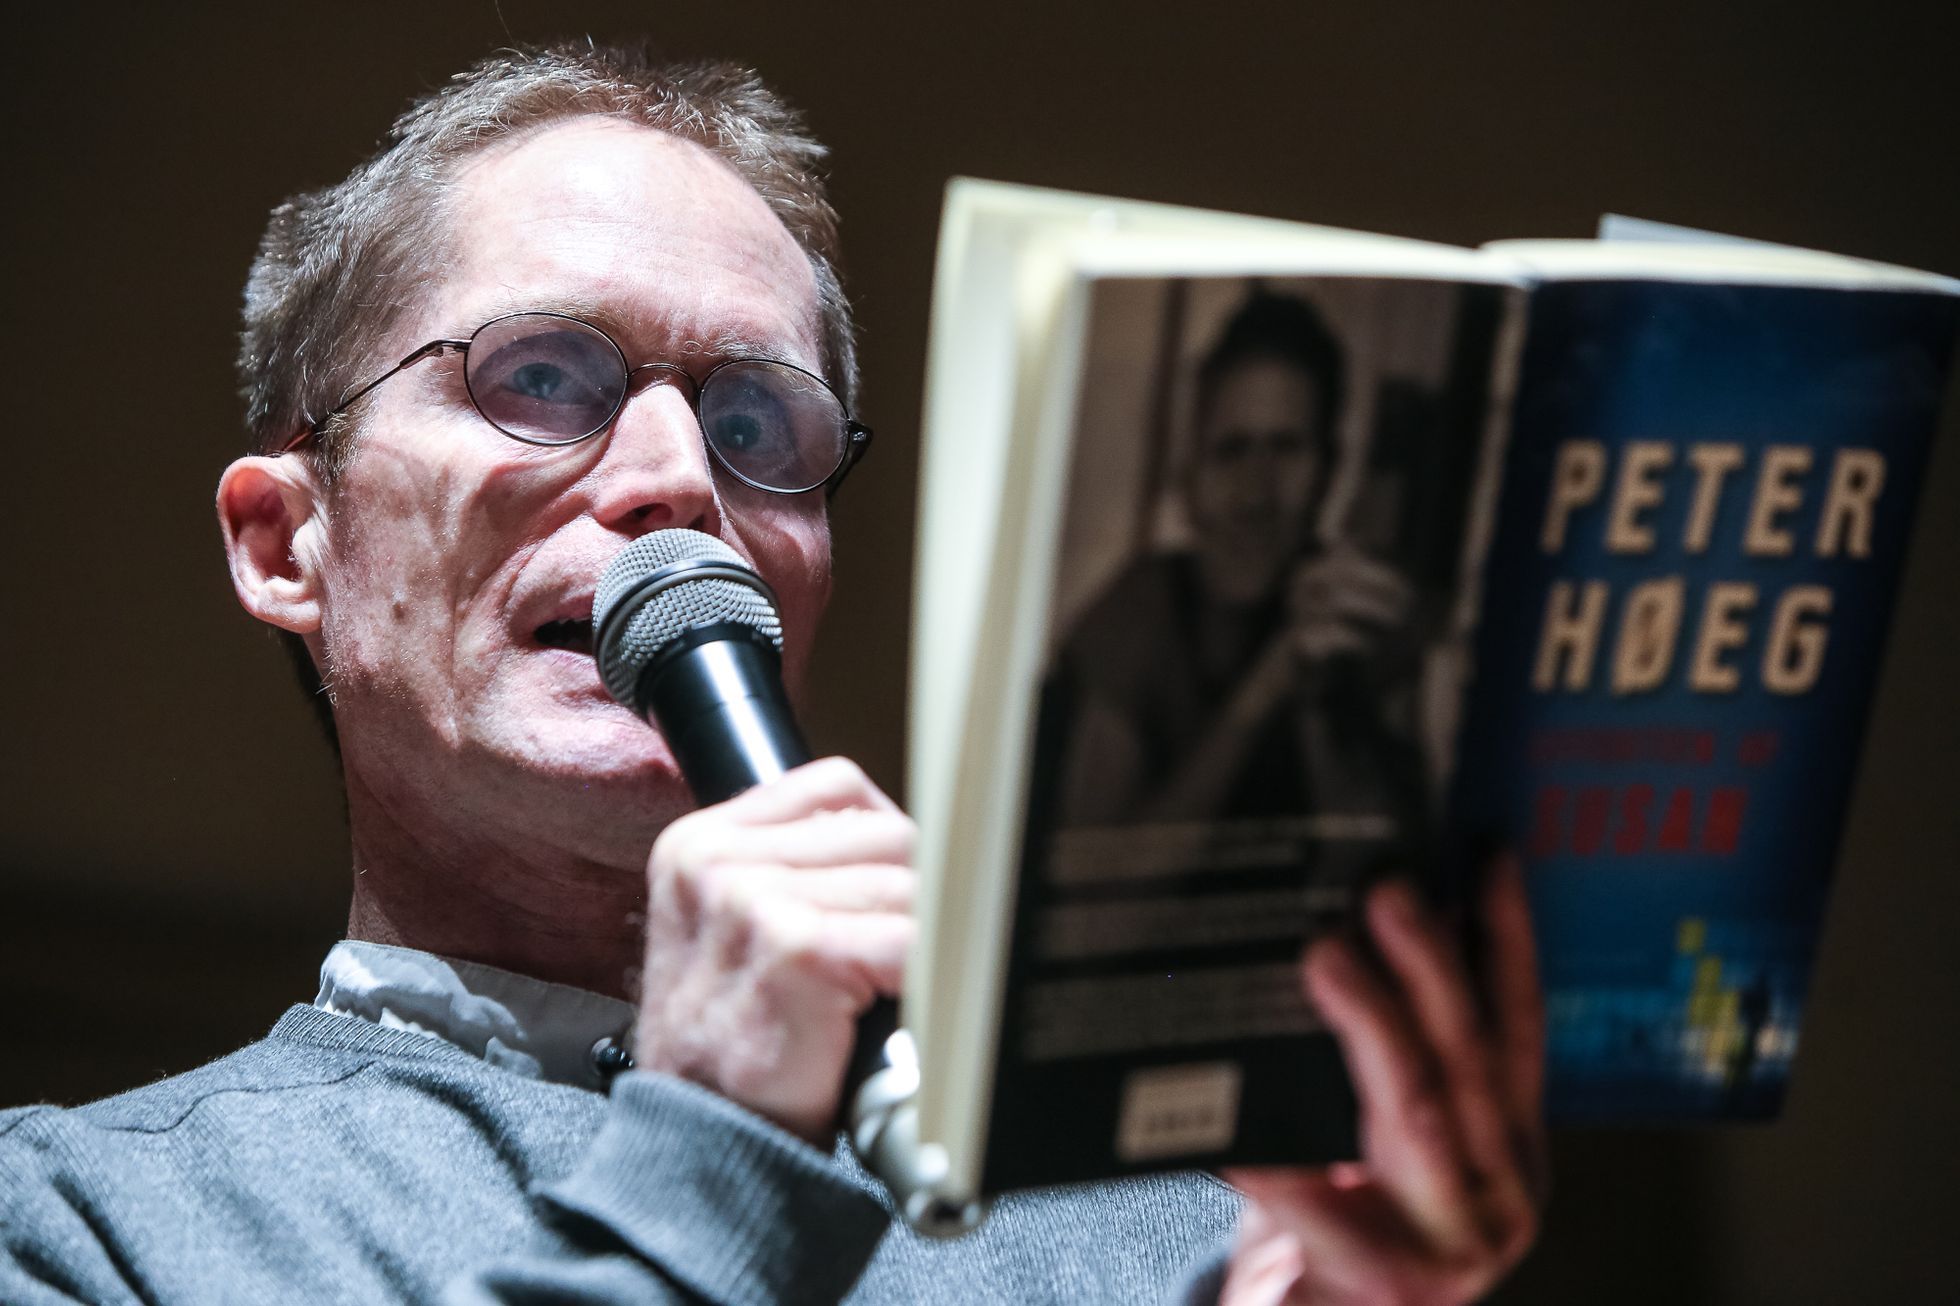 Peter Hoeg čte v Praze ze své knihy